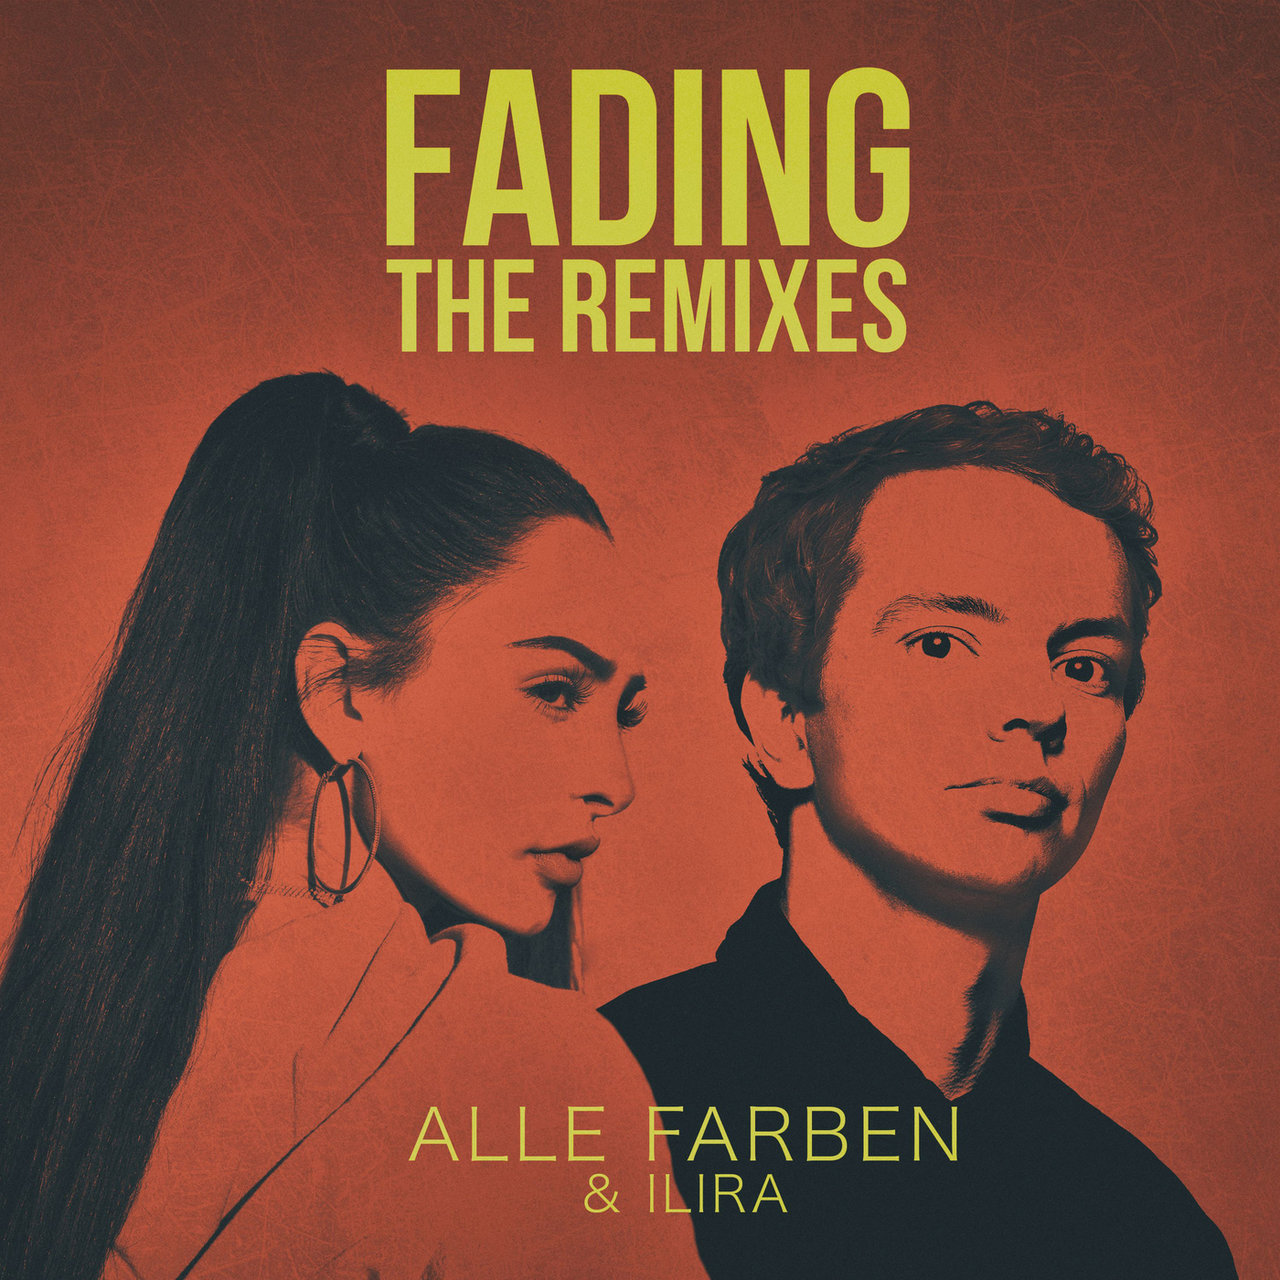 Alle Farben & ILIRA Fading (Alle Farben Club Mix) cover artwork